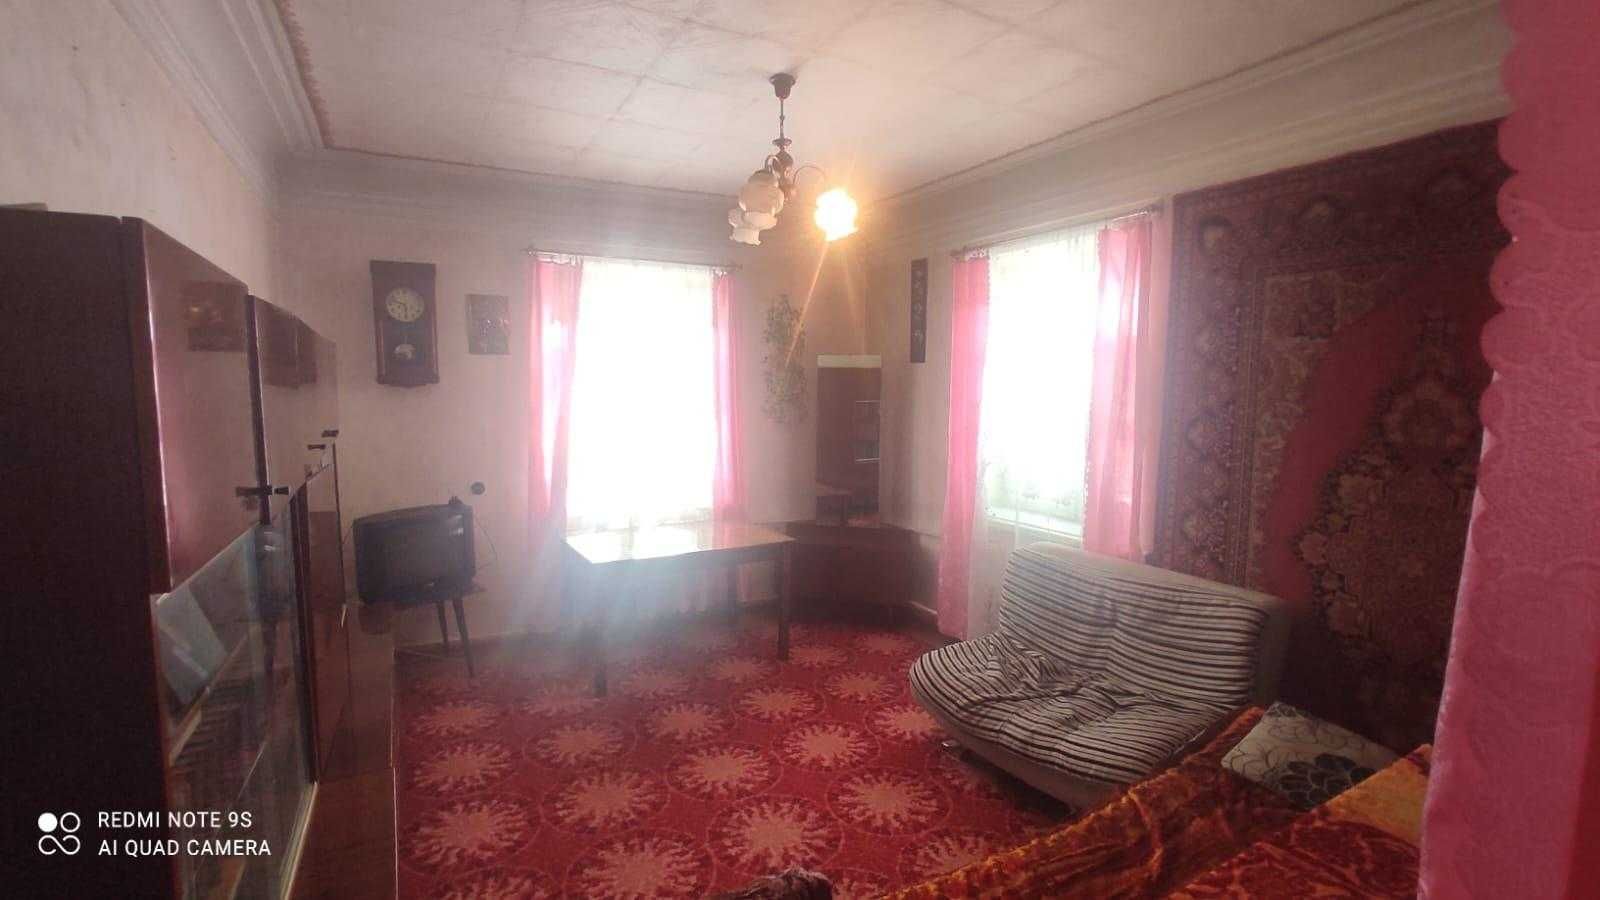 Продам 3-х комнатную квартиру по горячей цене в Сортировке!